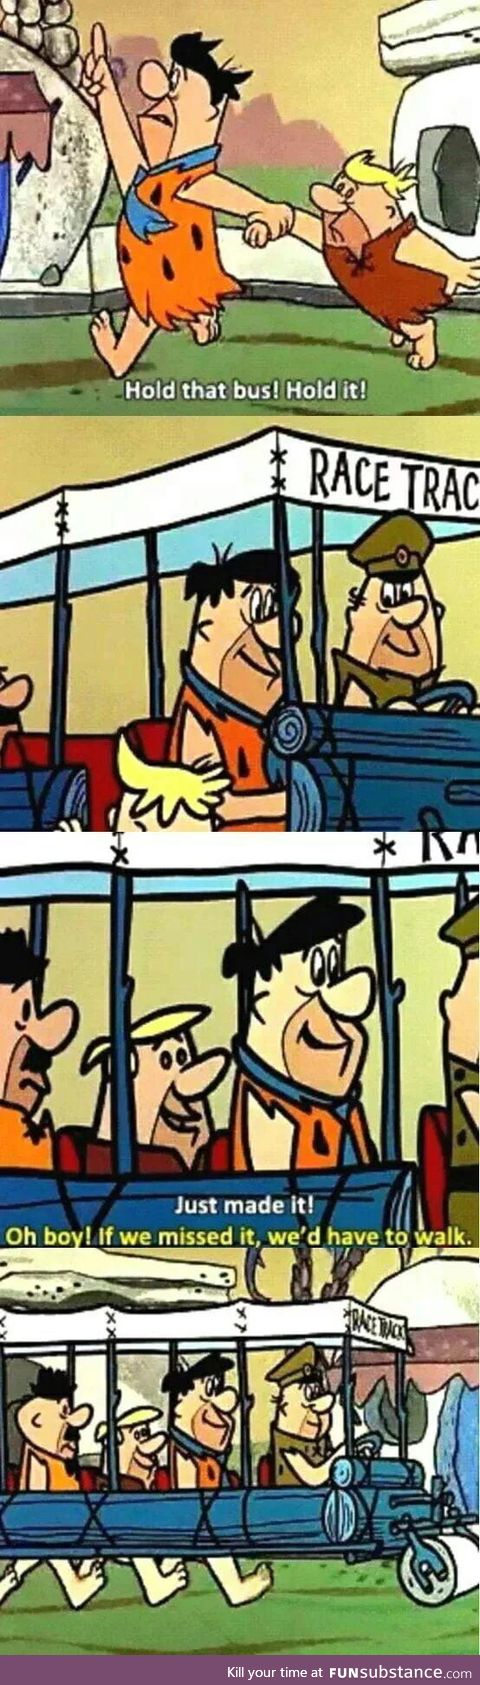 Flintstones were way ahead of their time